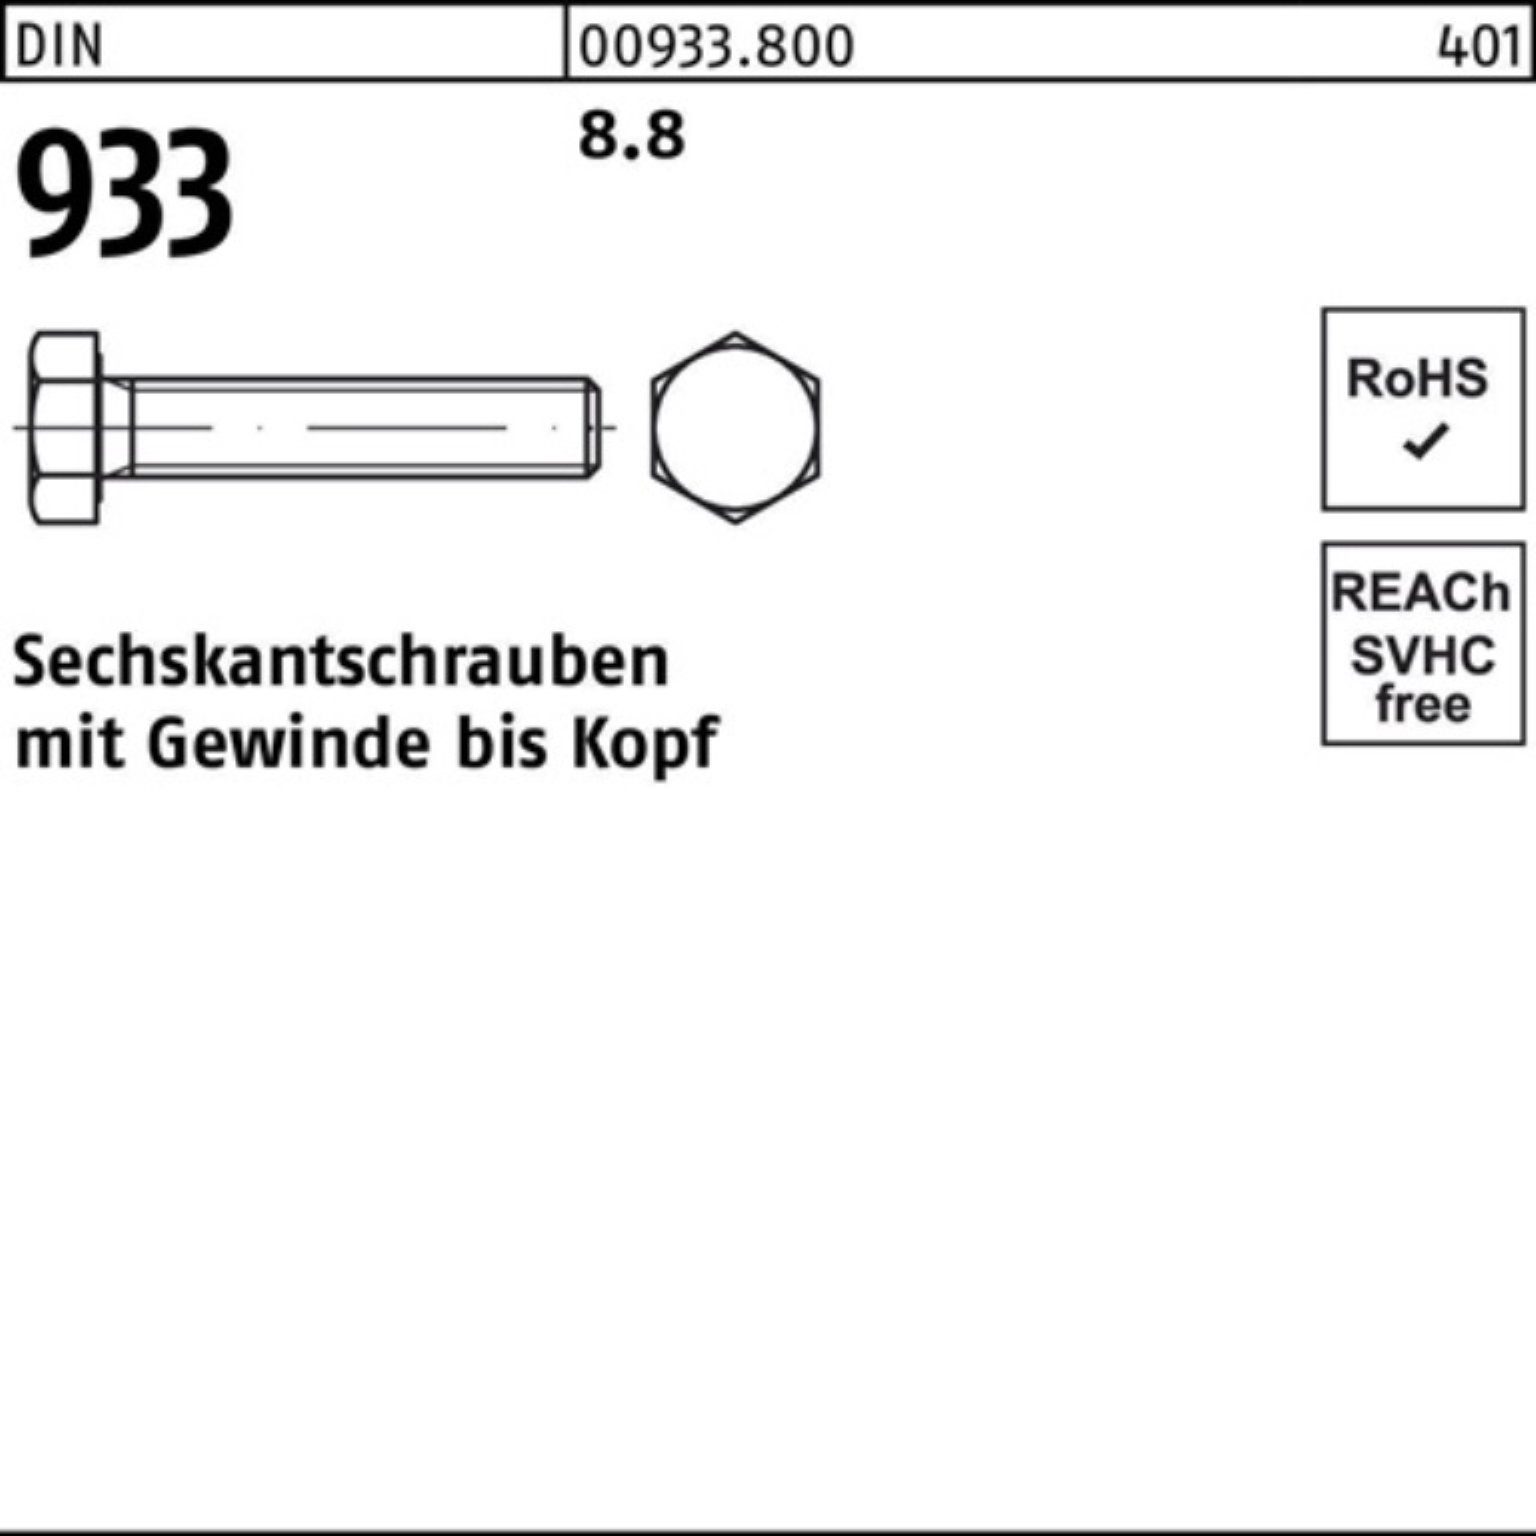 Reyher Sechskantschraube 100er Pack Sechskantschraube VG 8.8 933 DIN 933 100 M12x DIN Stück 12